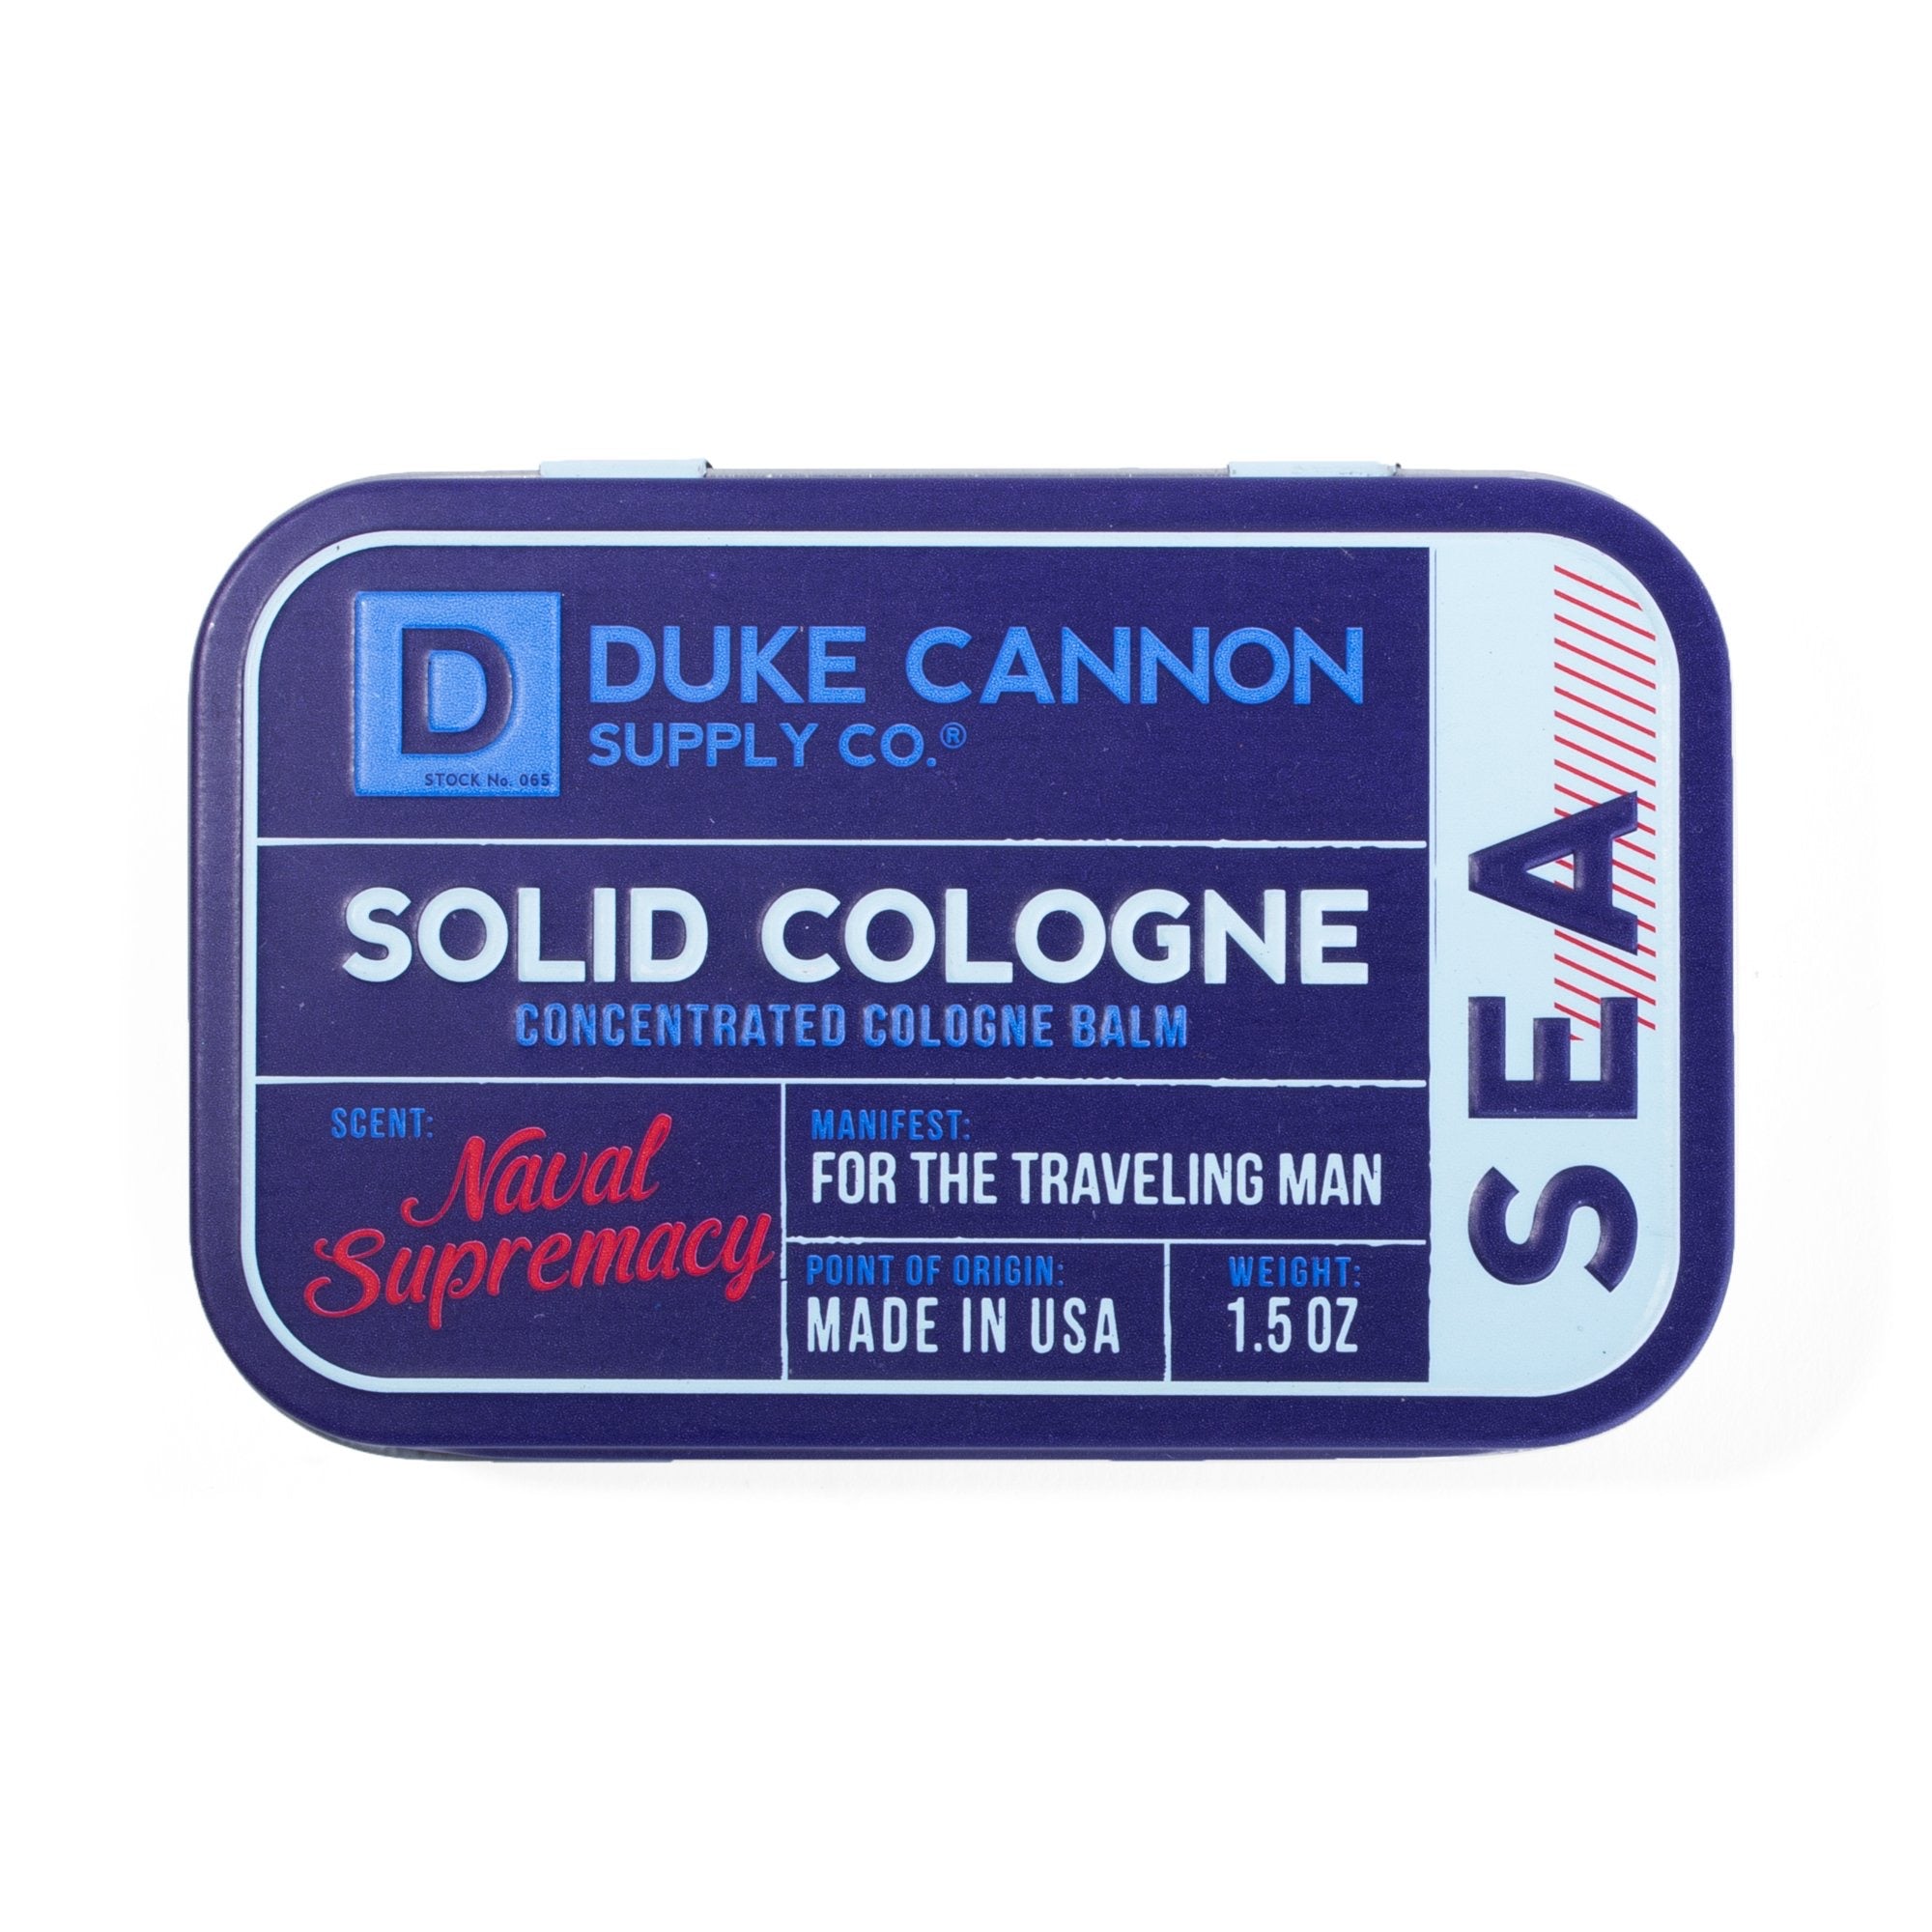 Duke Cannon Solid Cologne - Sea Naval Supremacy    